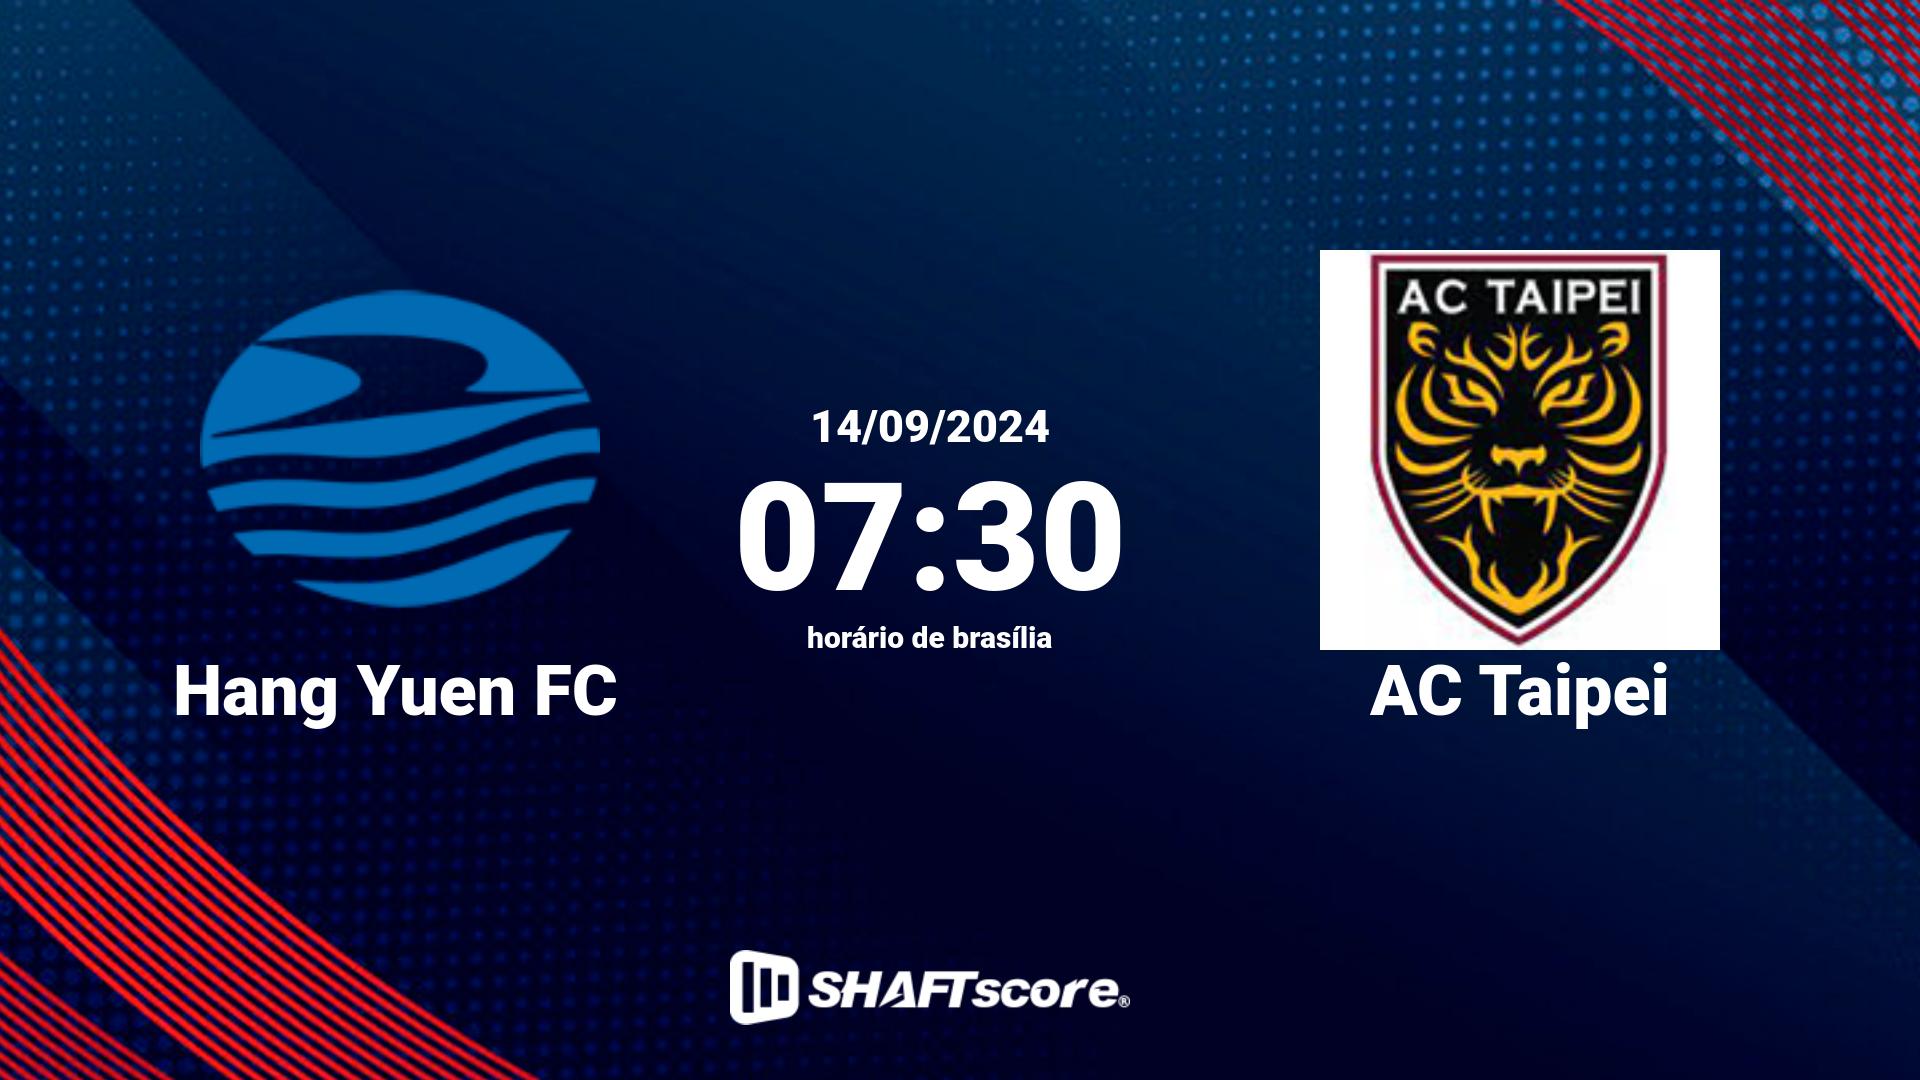 Estatísticas do jogo Hang Yuen FC vs AC Taipei 14.09 07:30